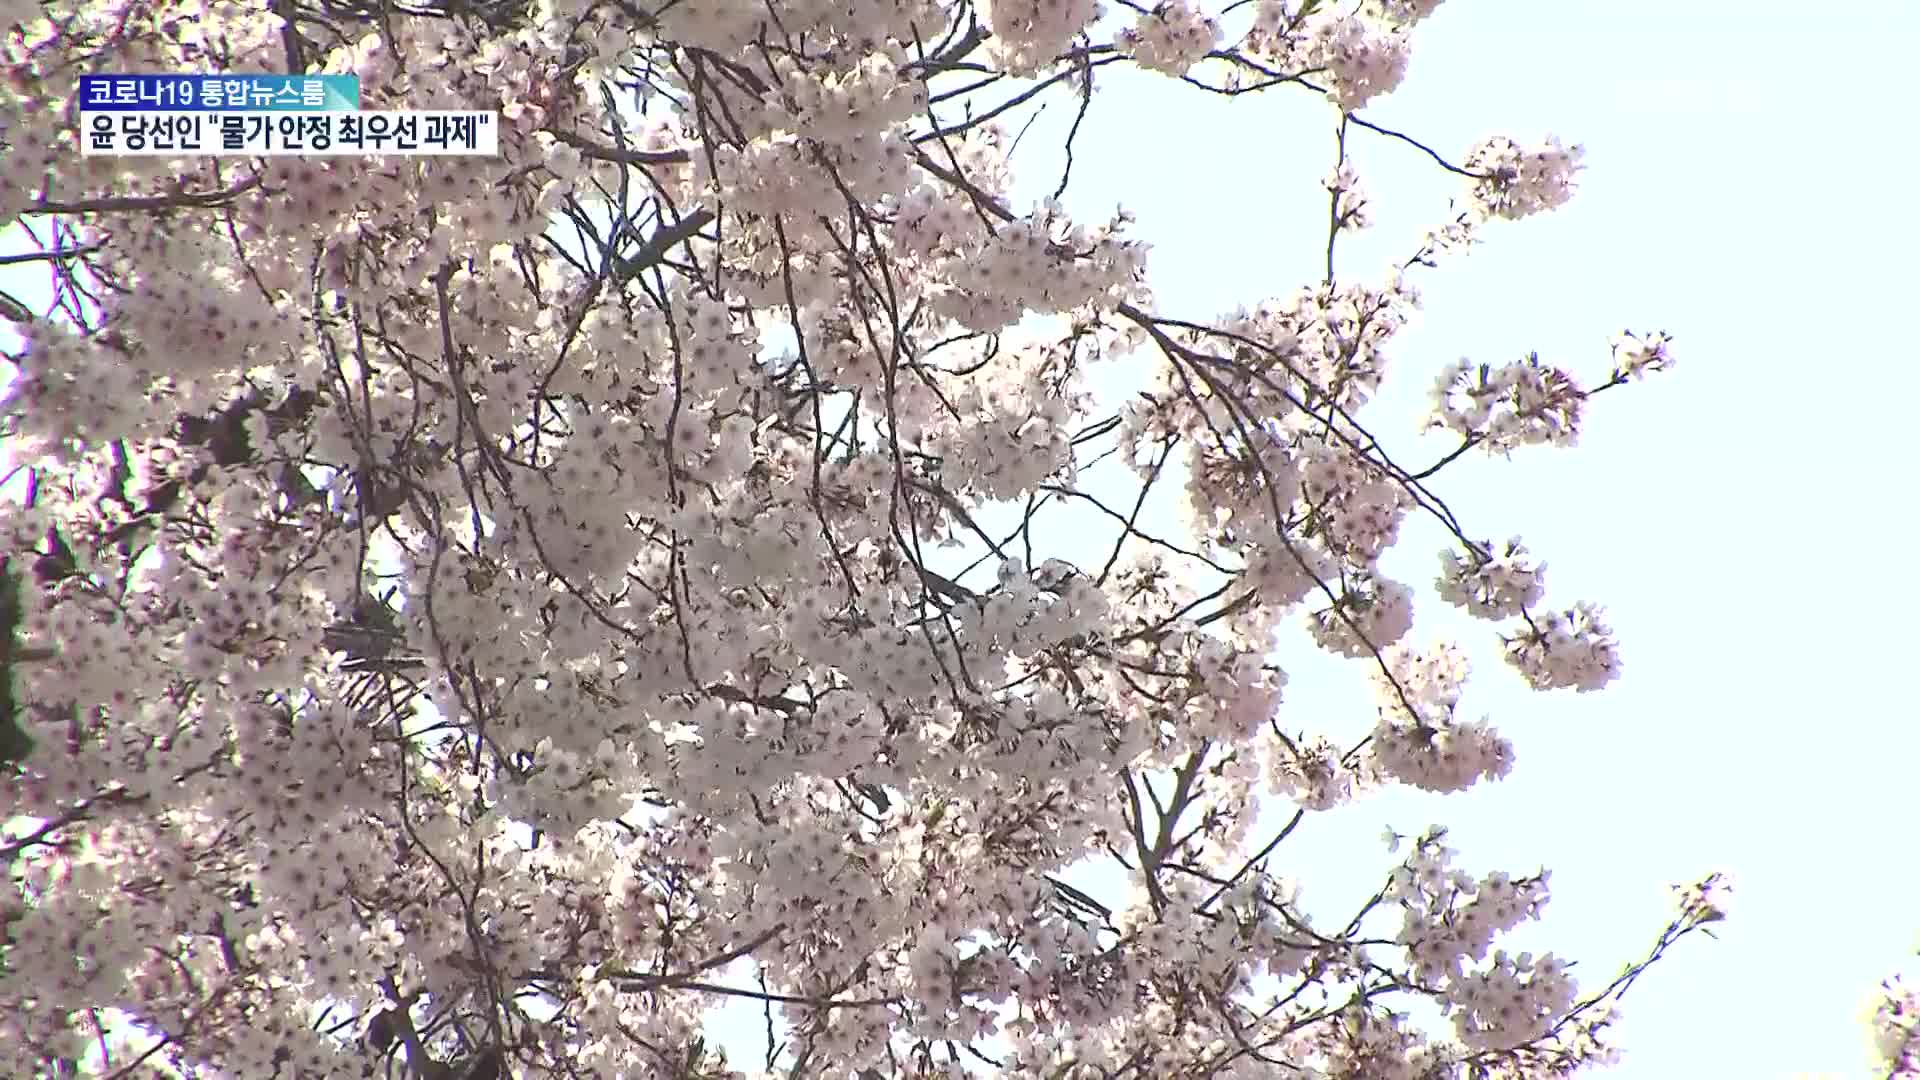 “왕벚나무는 제주 고유종” vs “1개체는 일본종”